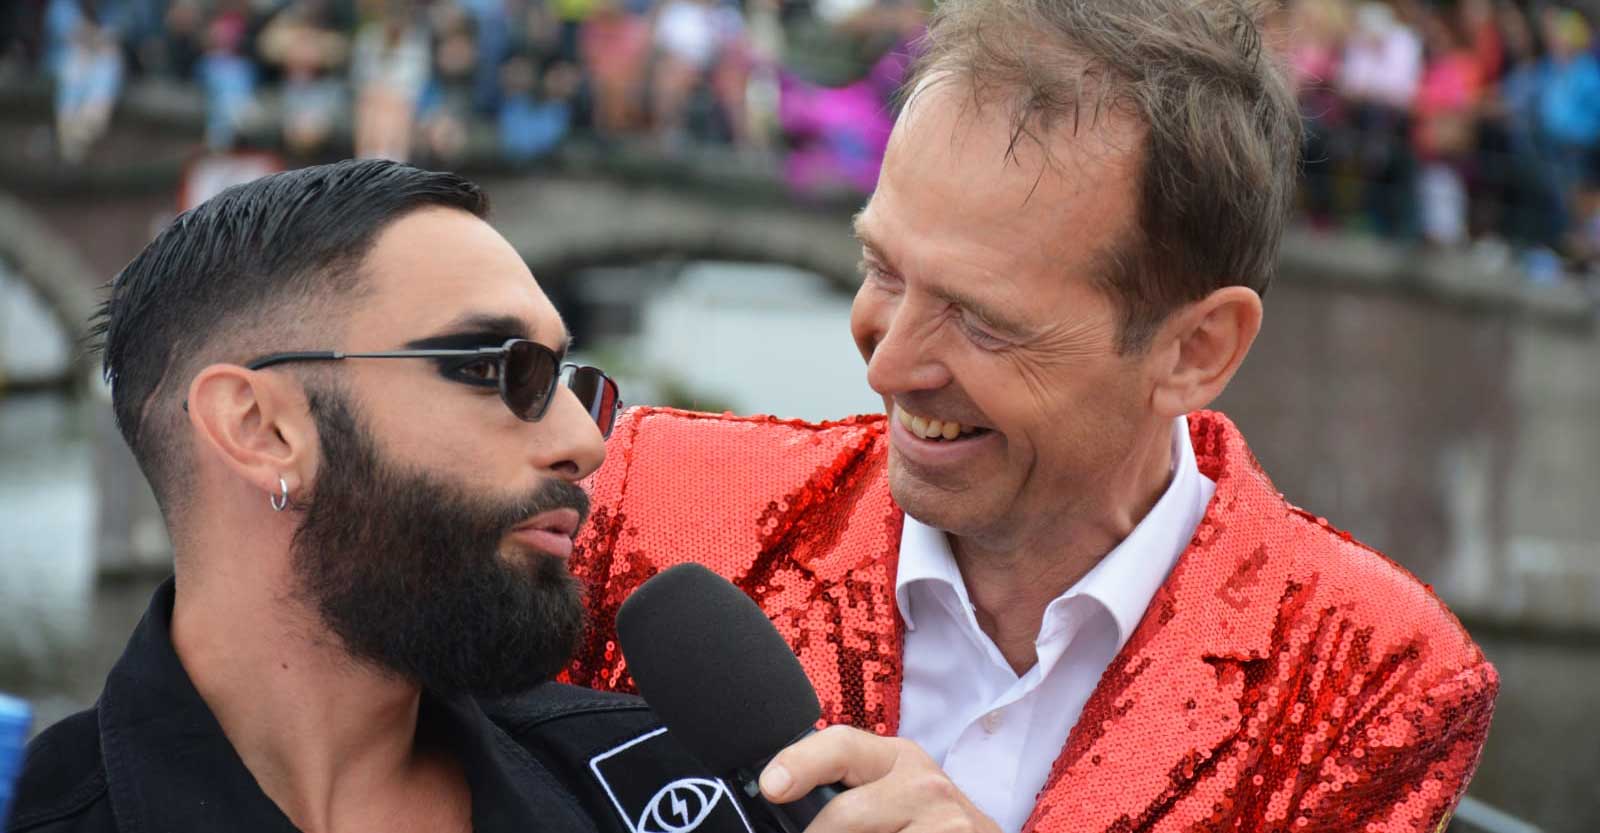 Pride2019 Siep De Haan interviewt Conchita Wurst op het VipDeck tijdens de Botenparade